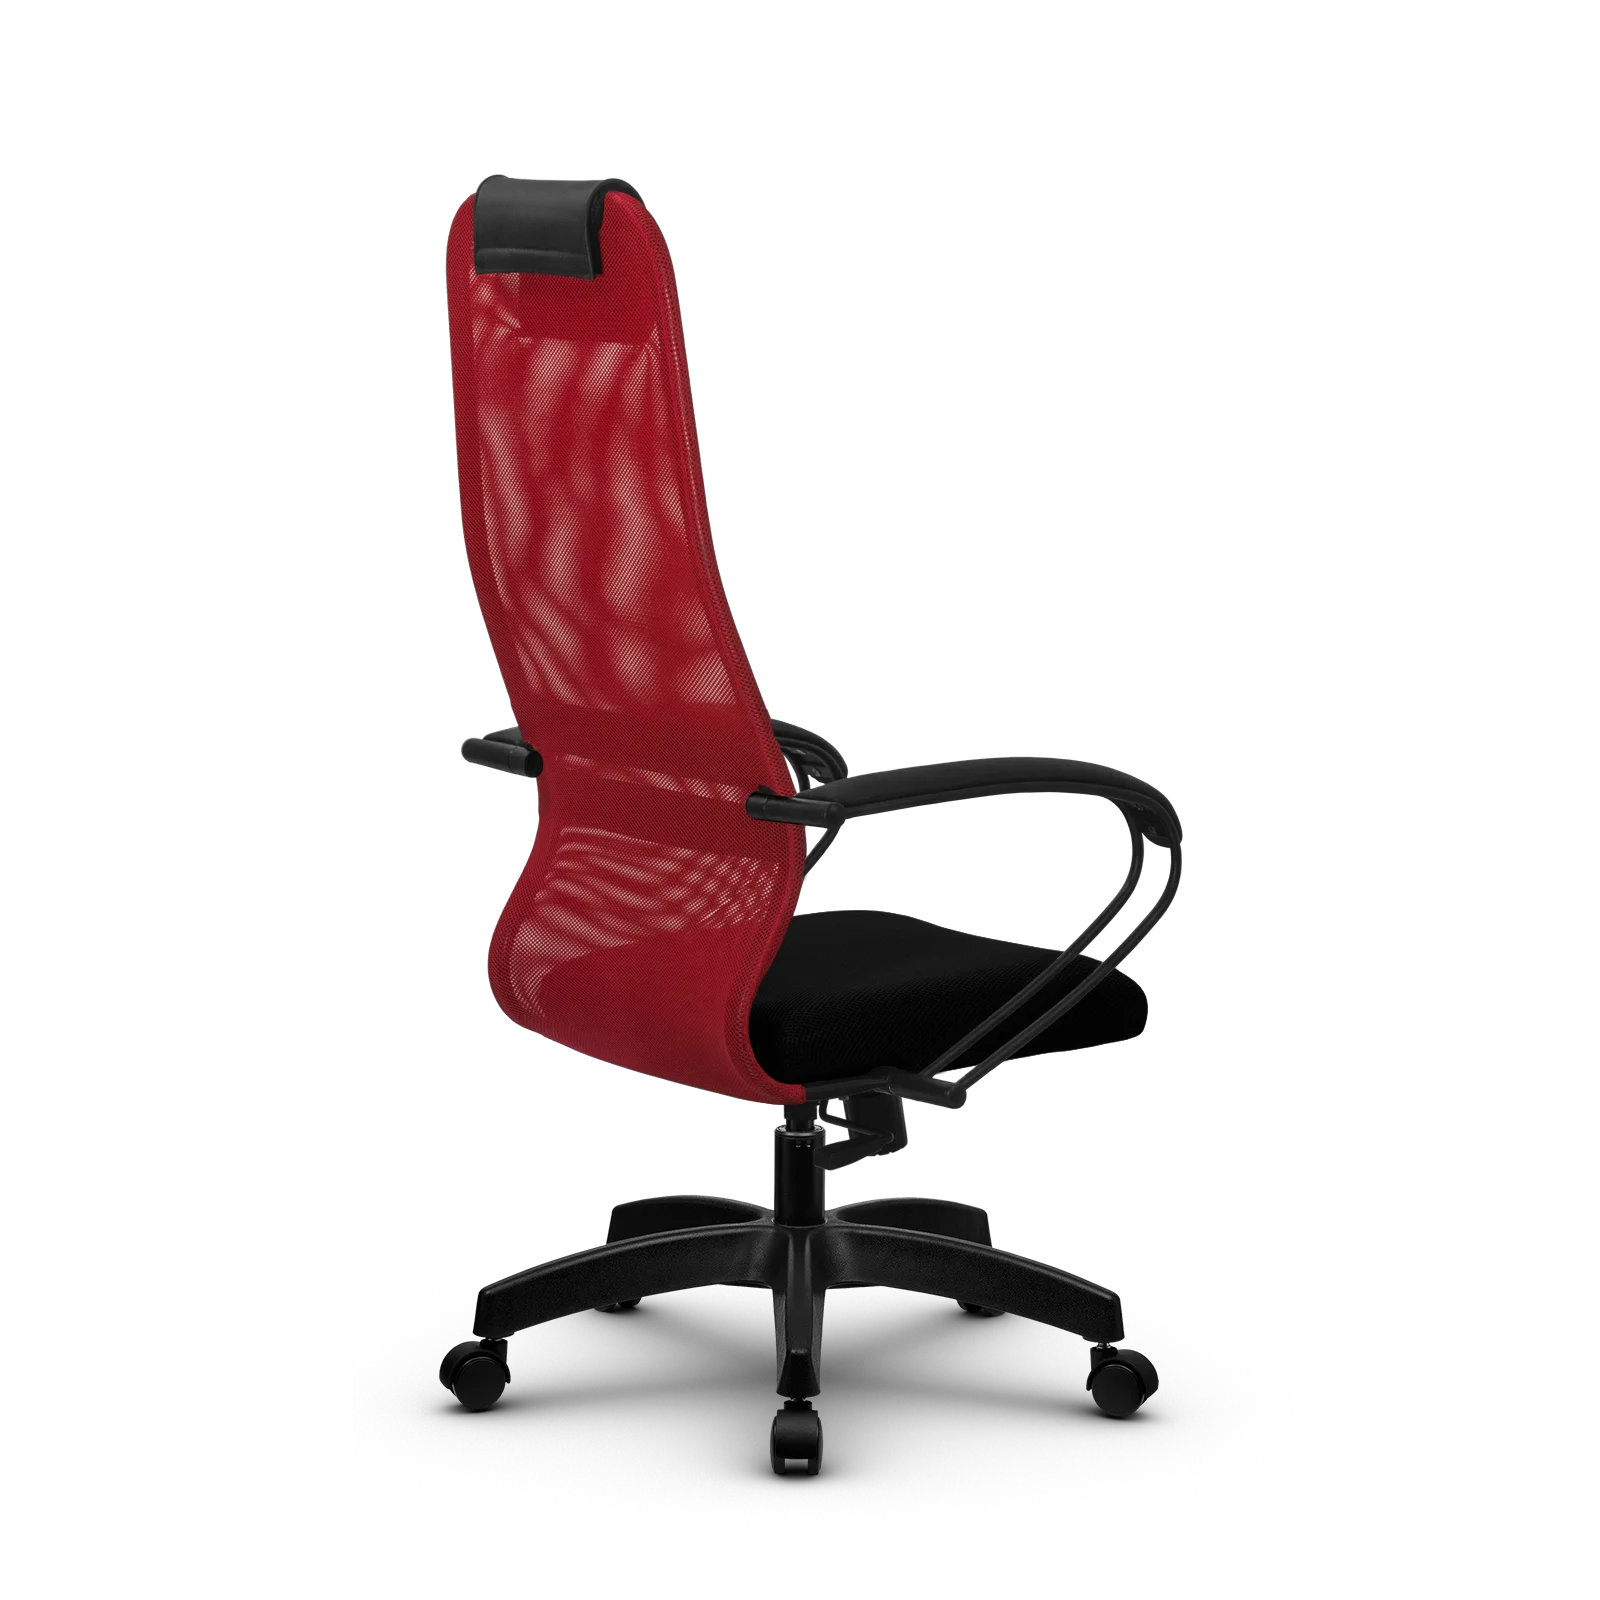 Кресло Метта 8 (Красный) компьютерное кресло с сетчатой высокой спинкой. Для офиса